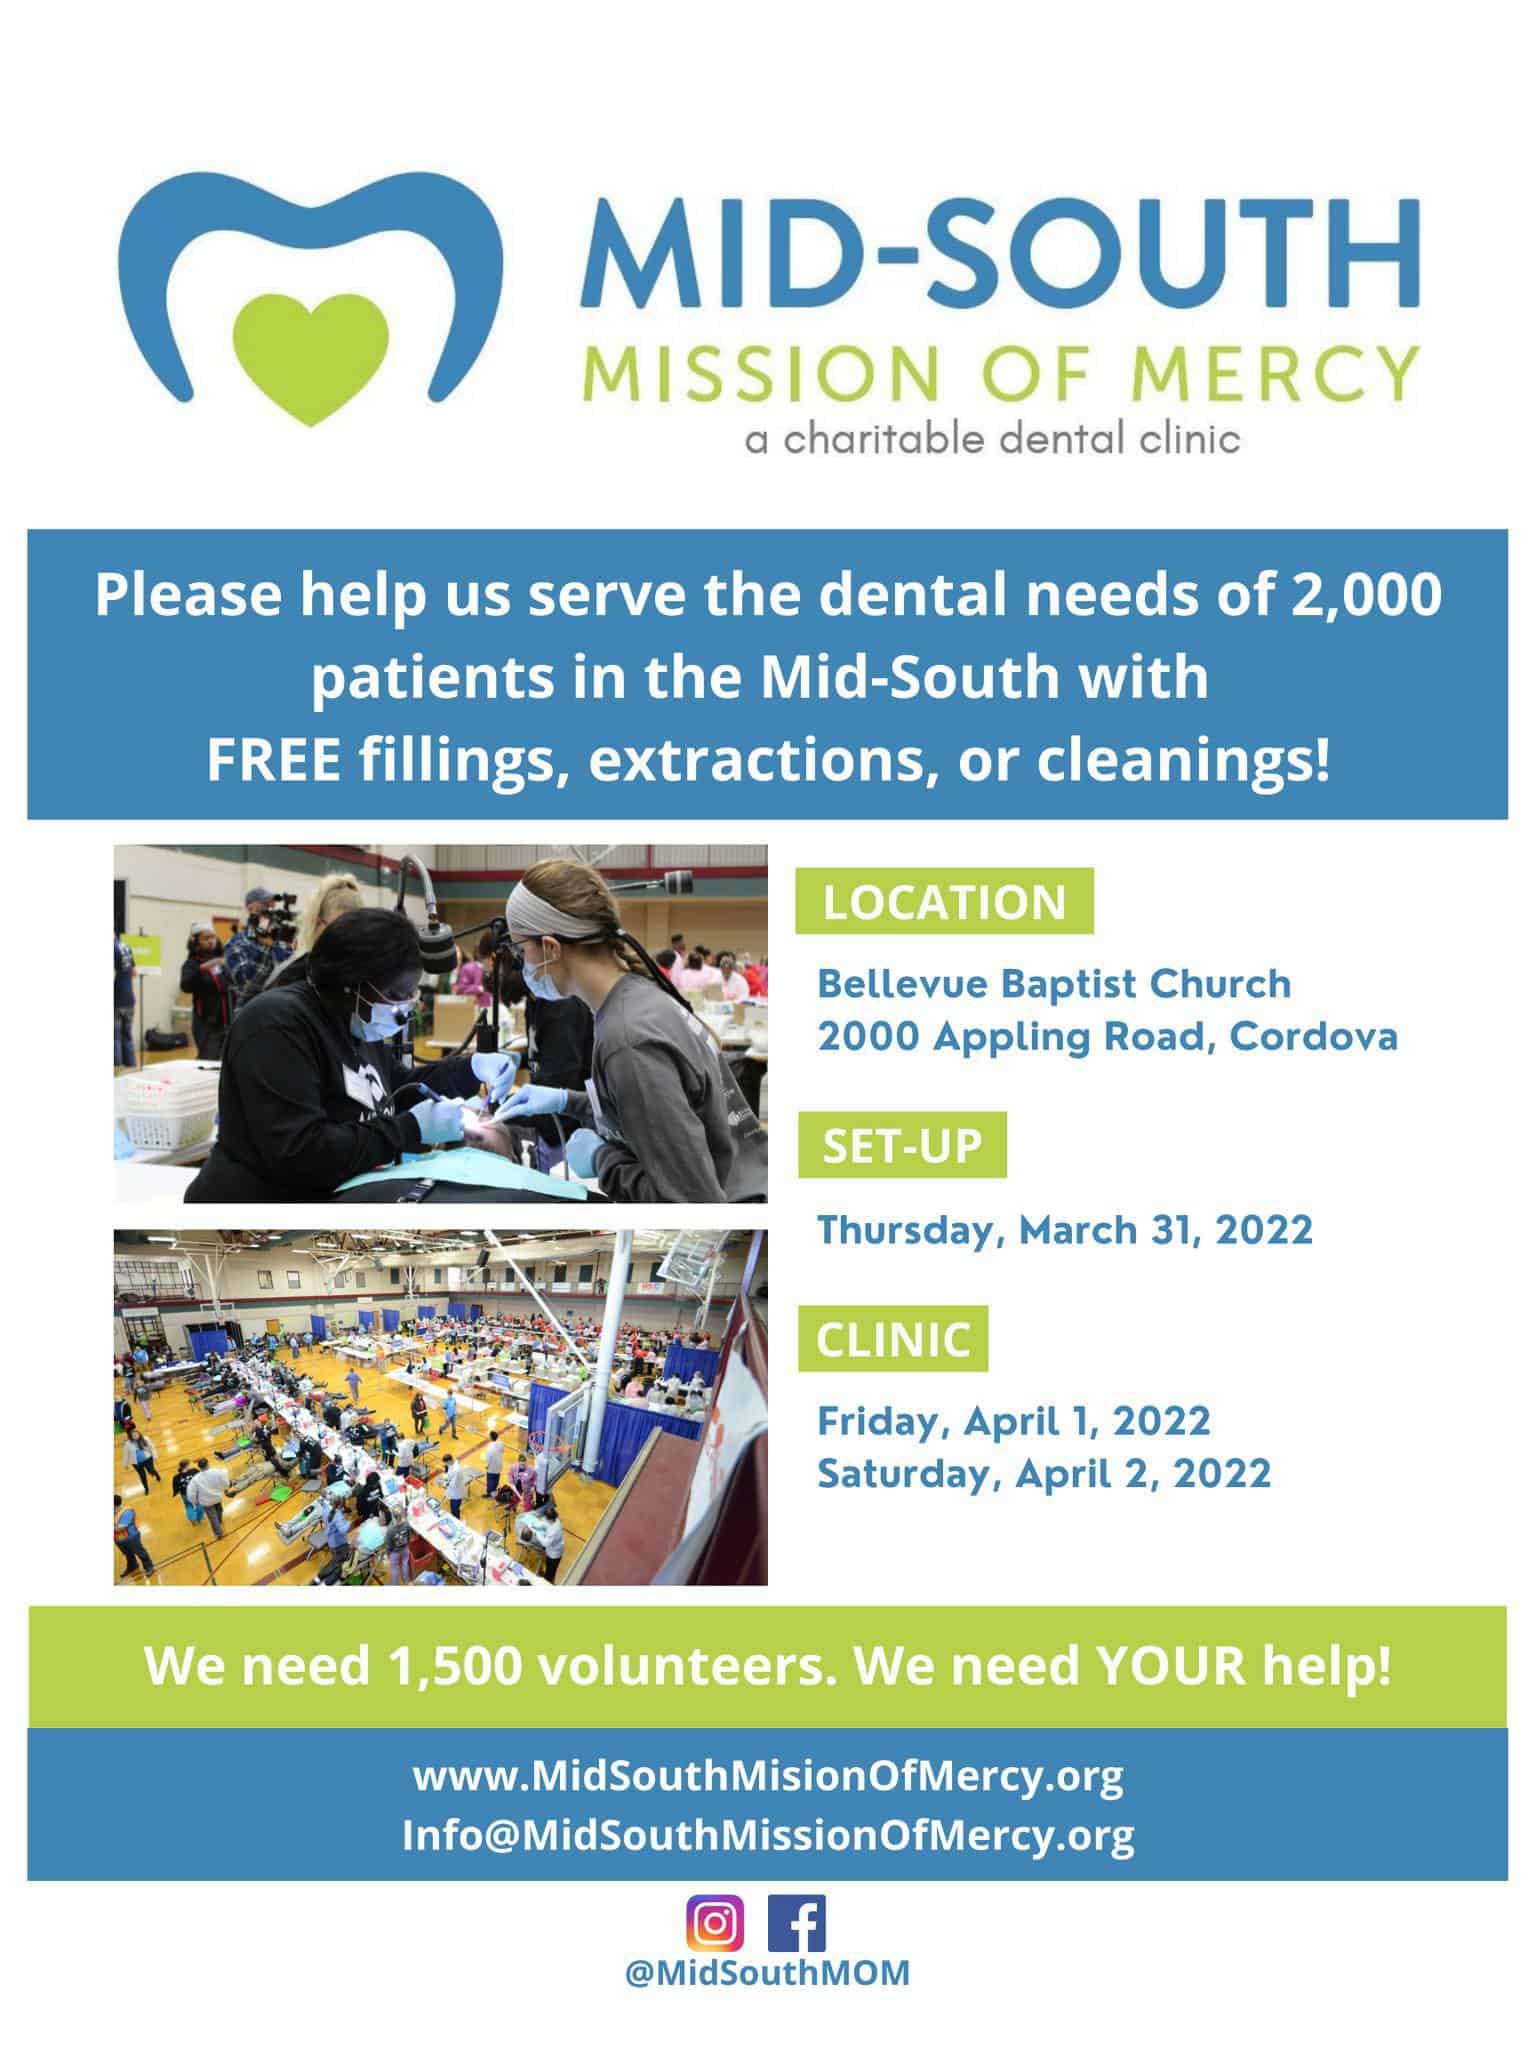 Clinica dental gratuita para el MedioSur MidSouth Mission of Mercy el